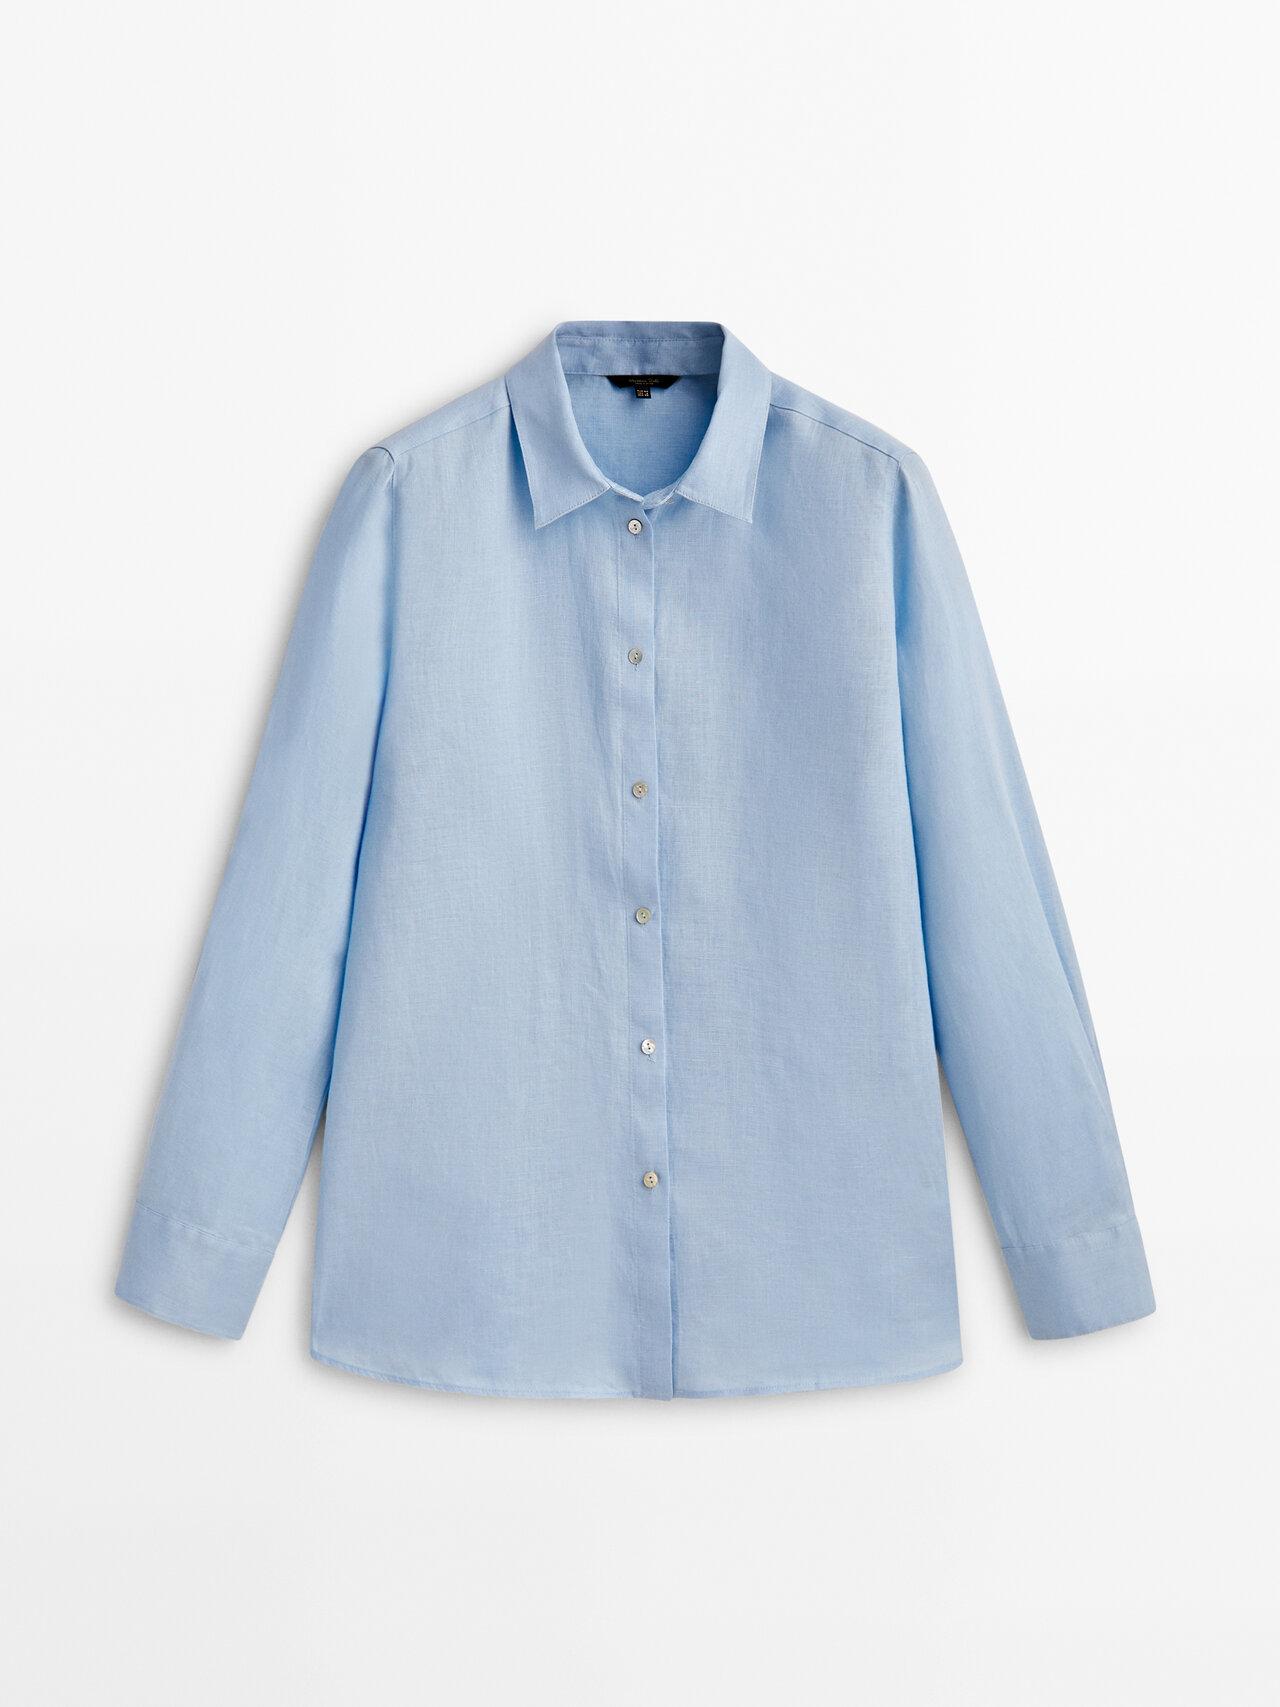 MASSIMO DUTTI 100% Linen Shirt in Blue | Lyst